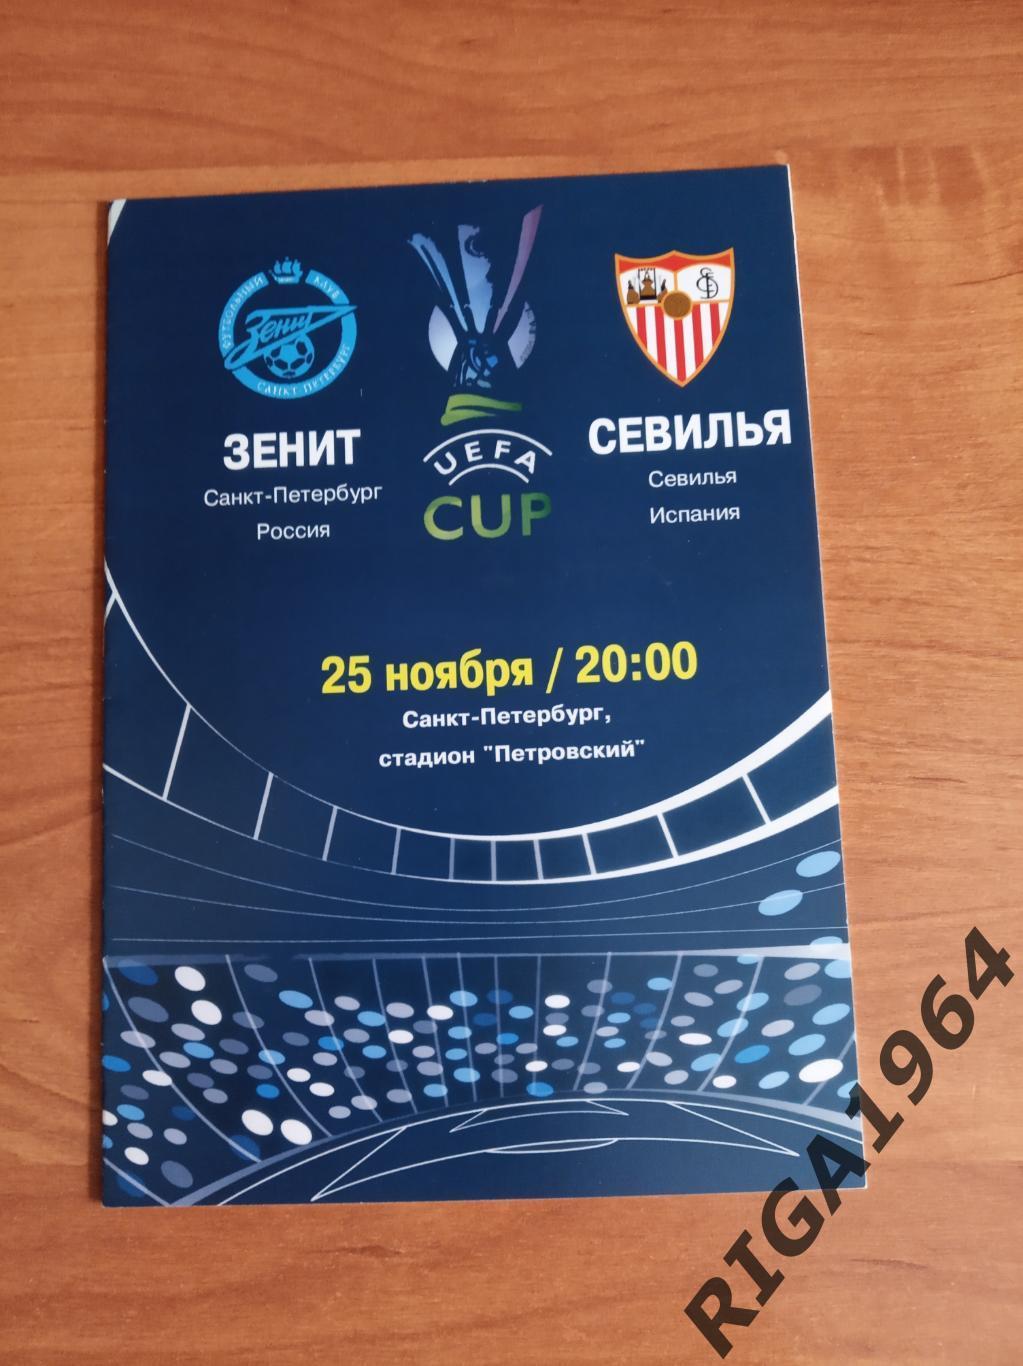 Кубок УЕФА 2004/05 Зенит Ст.-Петербург-Севилья Испания